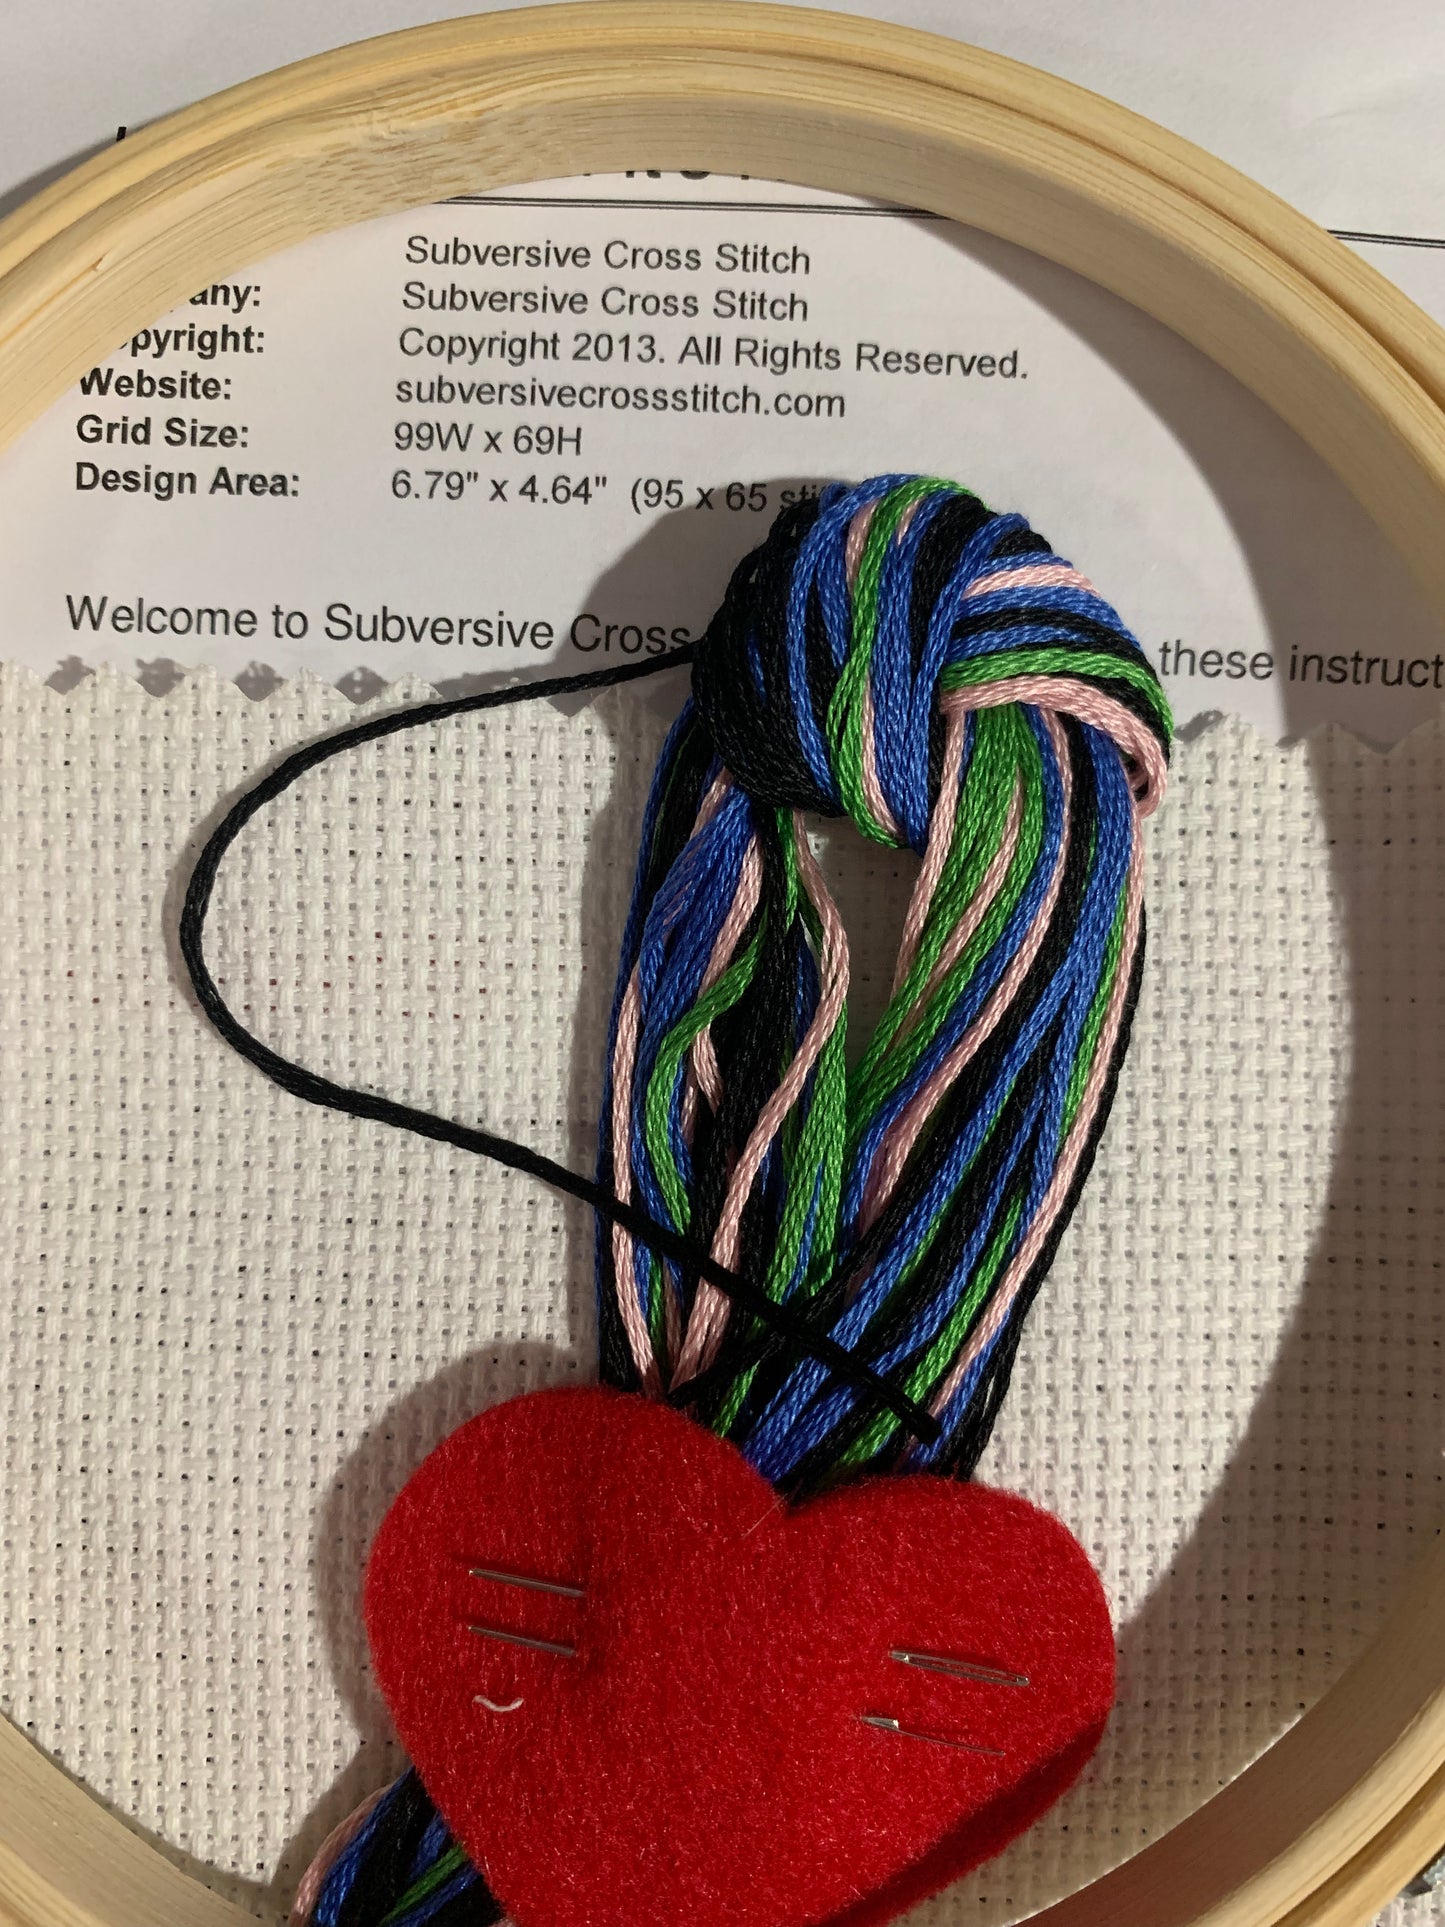 Orna-Mental - Cross Stitch Kit